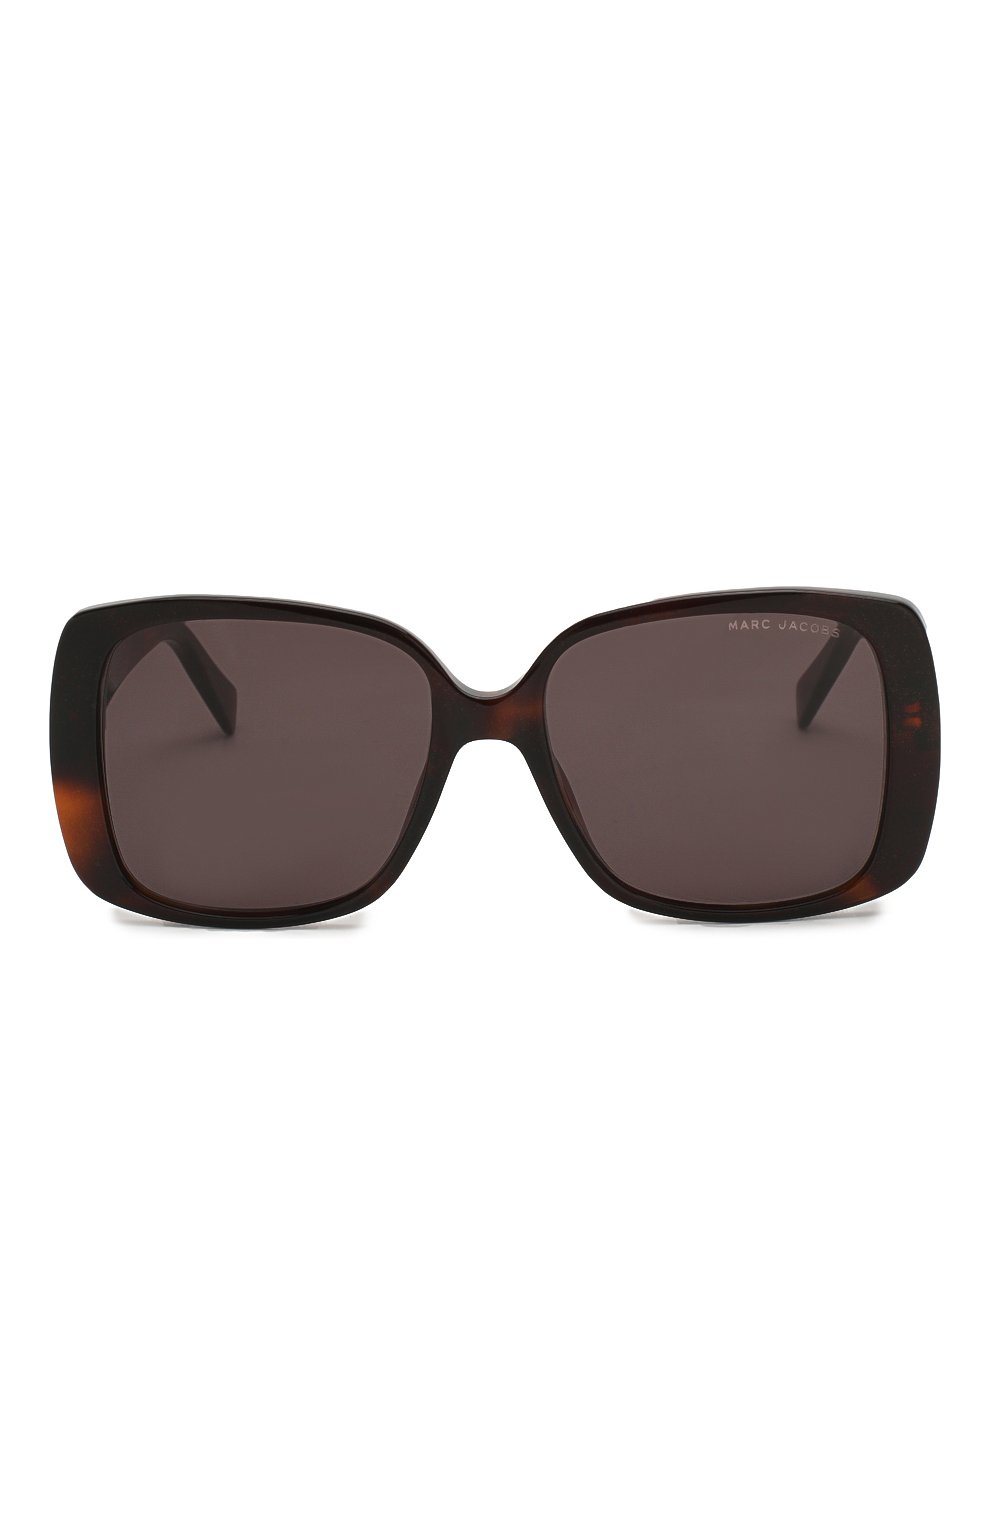 Женские солнцезащитные очки MARC JACOBS (THE) коричневого цвета, арт. MARC 423 DXH | Фото 3 (Тип очков: С/з; Очки форма: Квадратные, Прямоугольные; Оптика Гендер: оптика-женское)